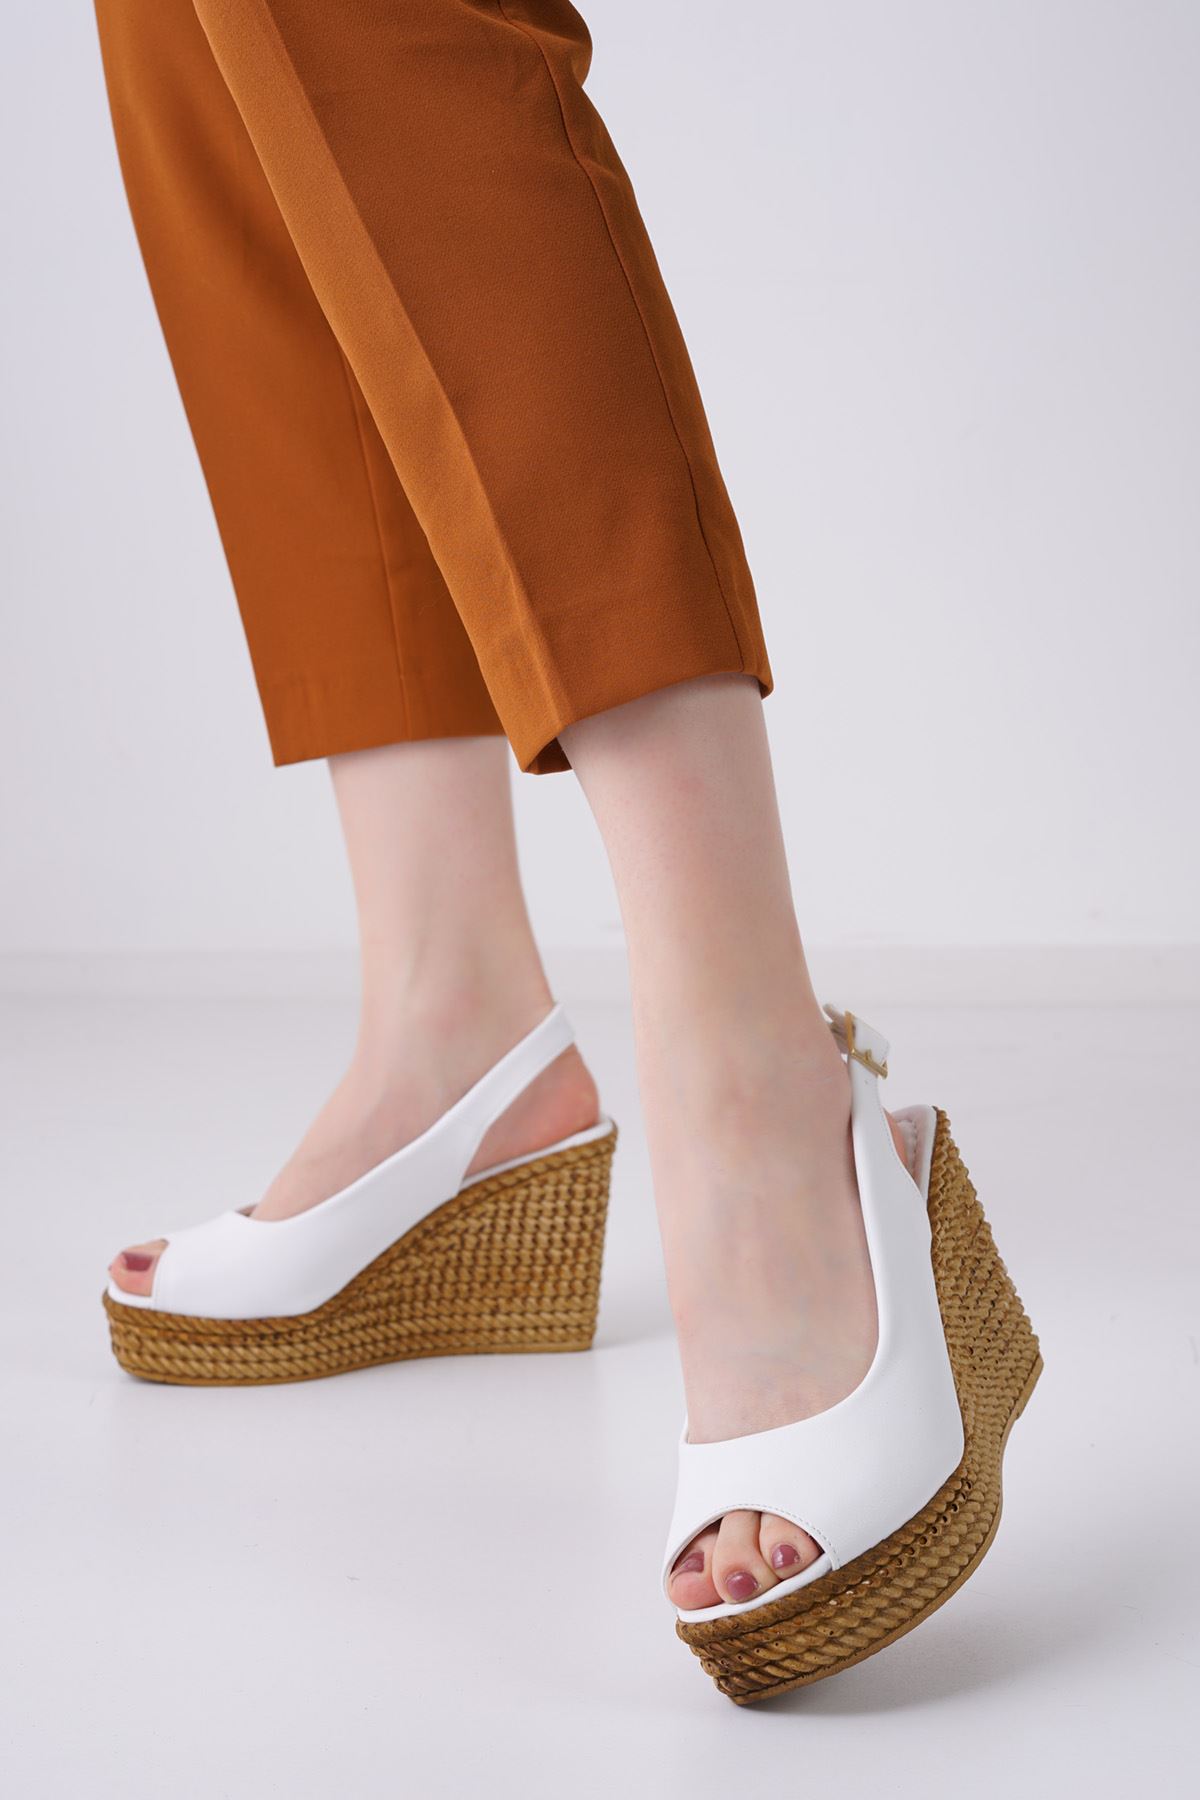 Cenny Beyaz Dolgu Topuklu Kadın Ayakkabı